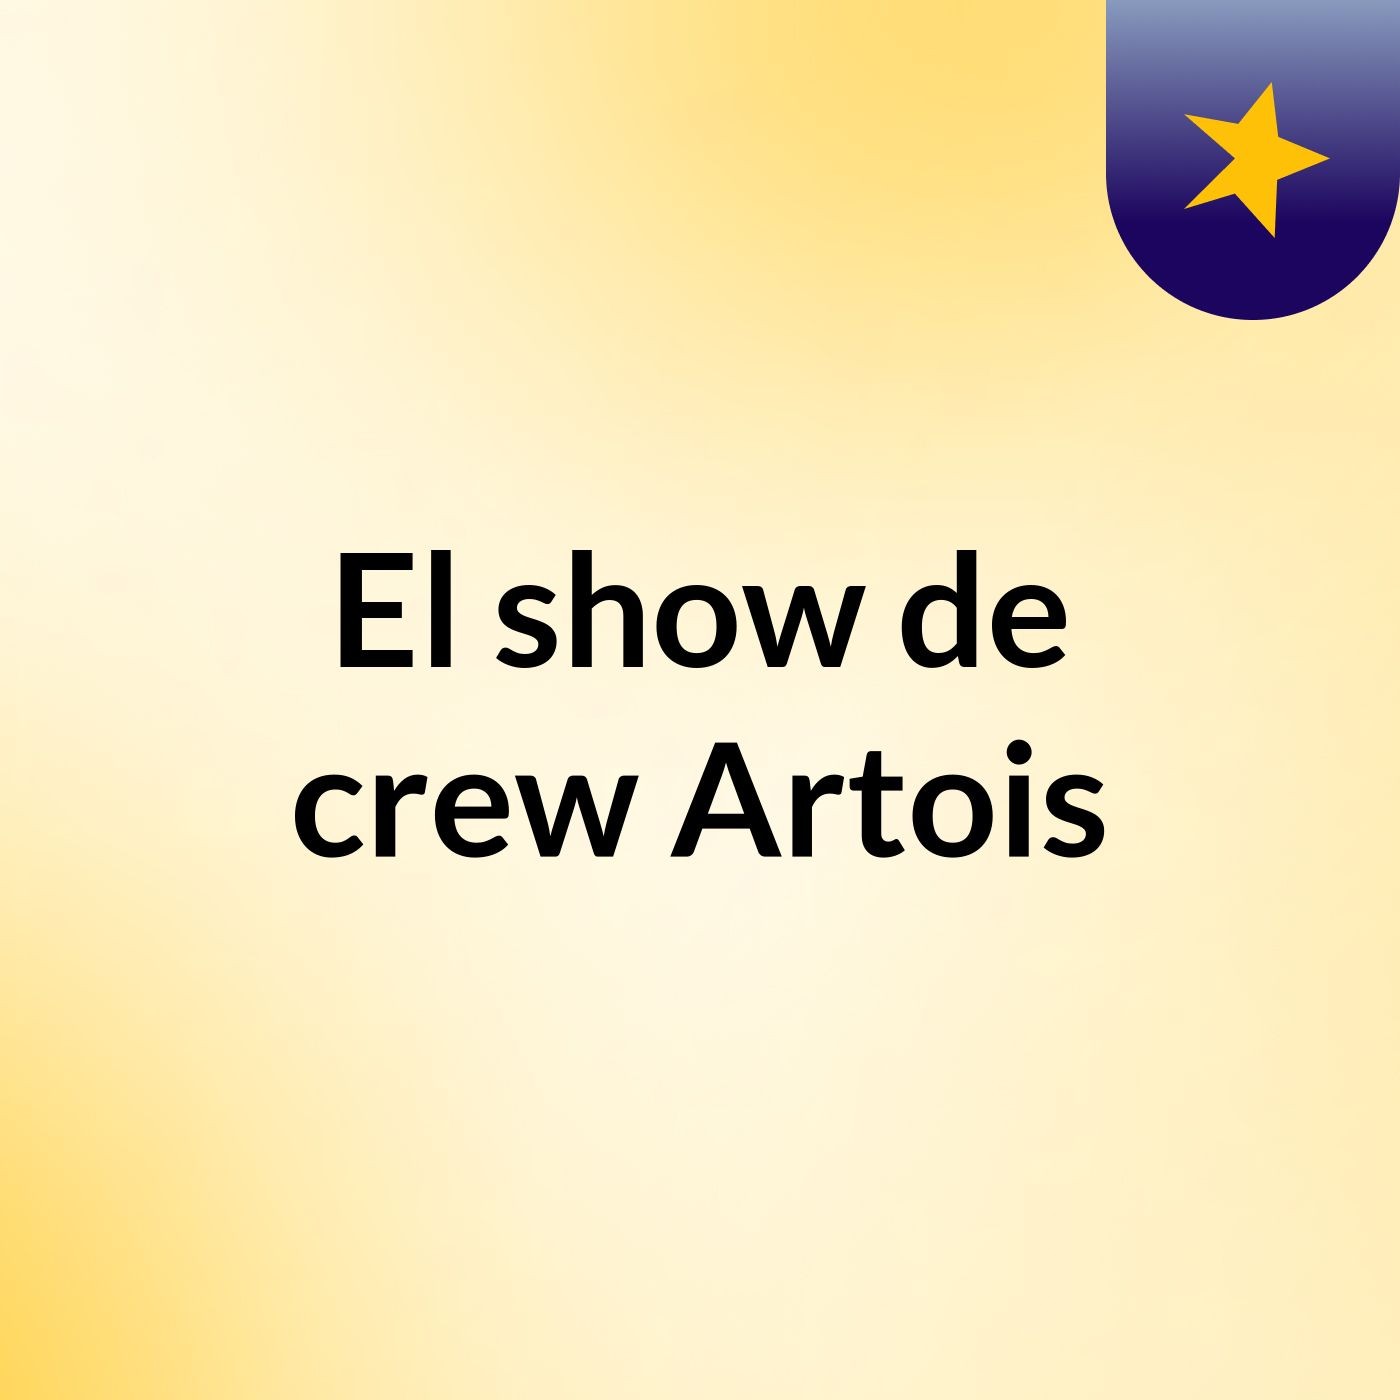 El show de crew Artois